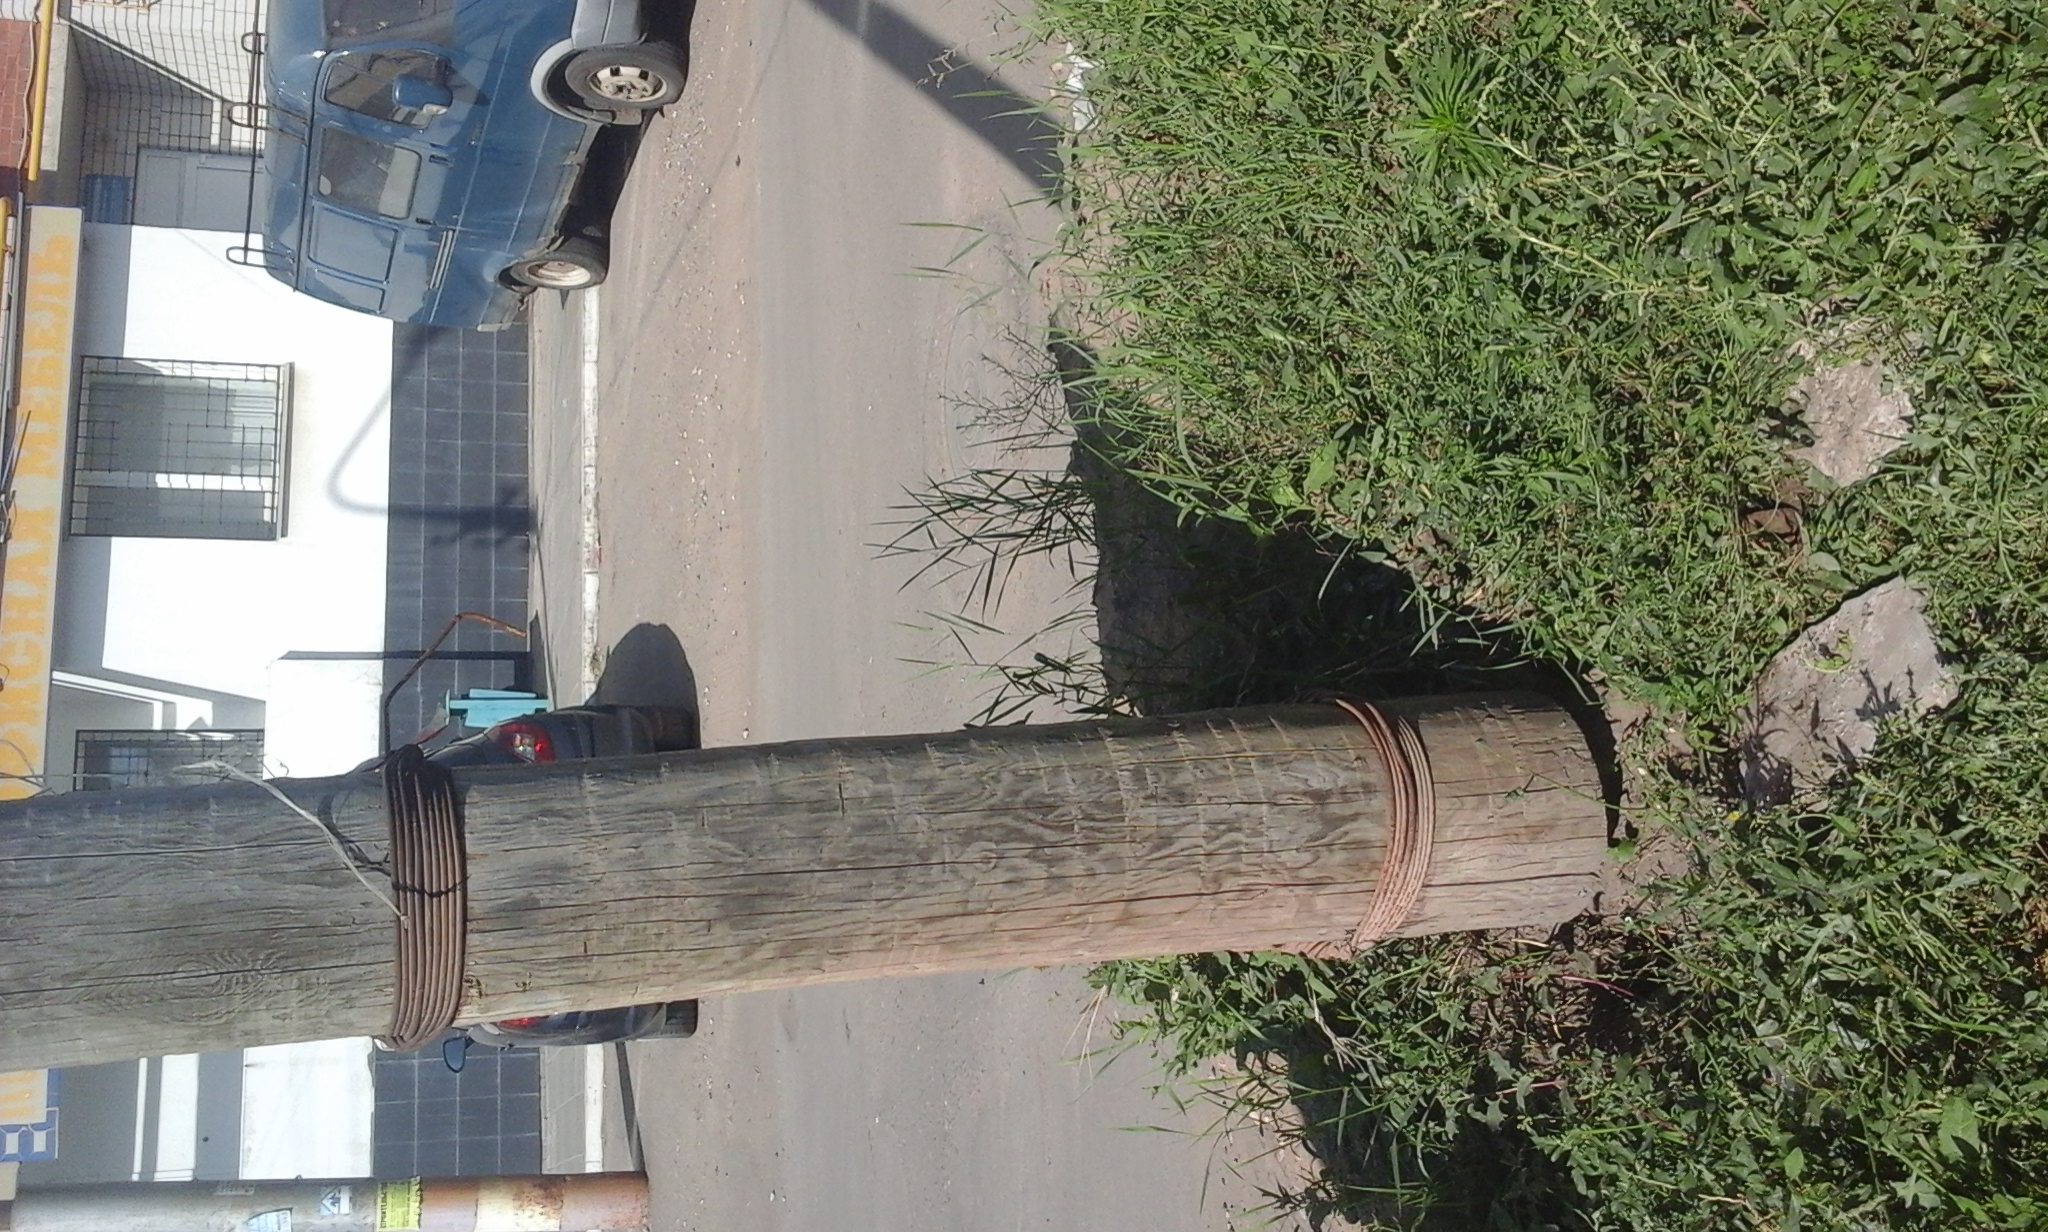 A fire hydrant in front of a brick wall - Httpslutim6bn0igiz633w0mn2xiys25tpqwjpg 52629541 161797